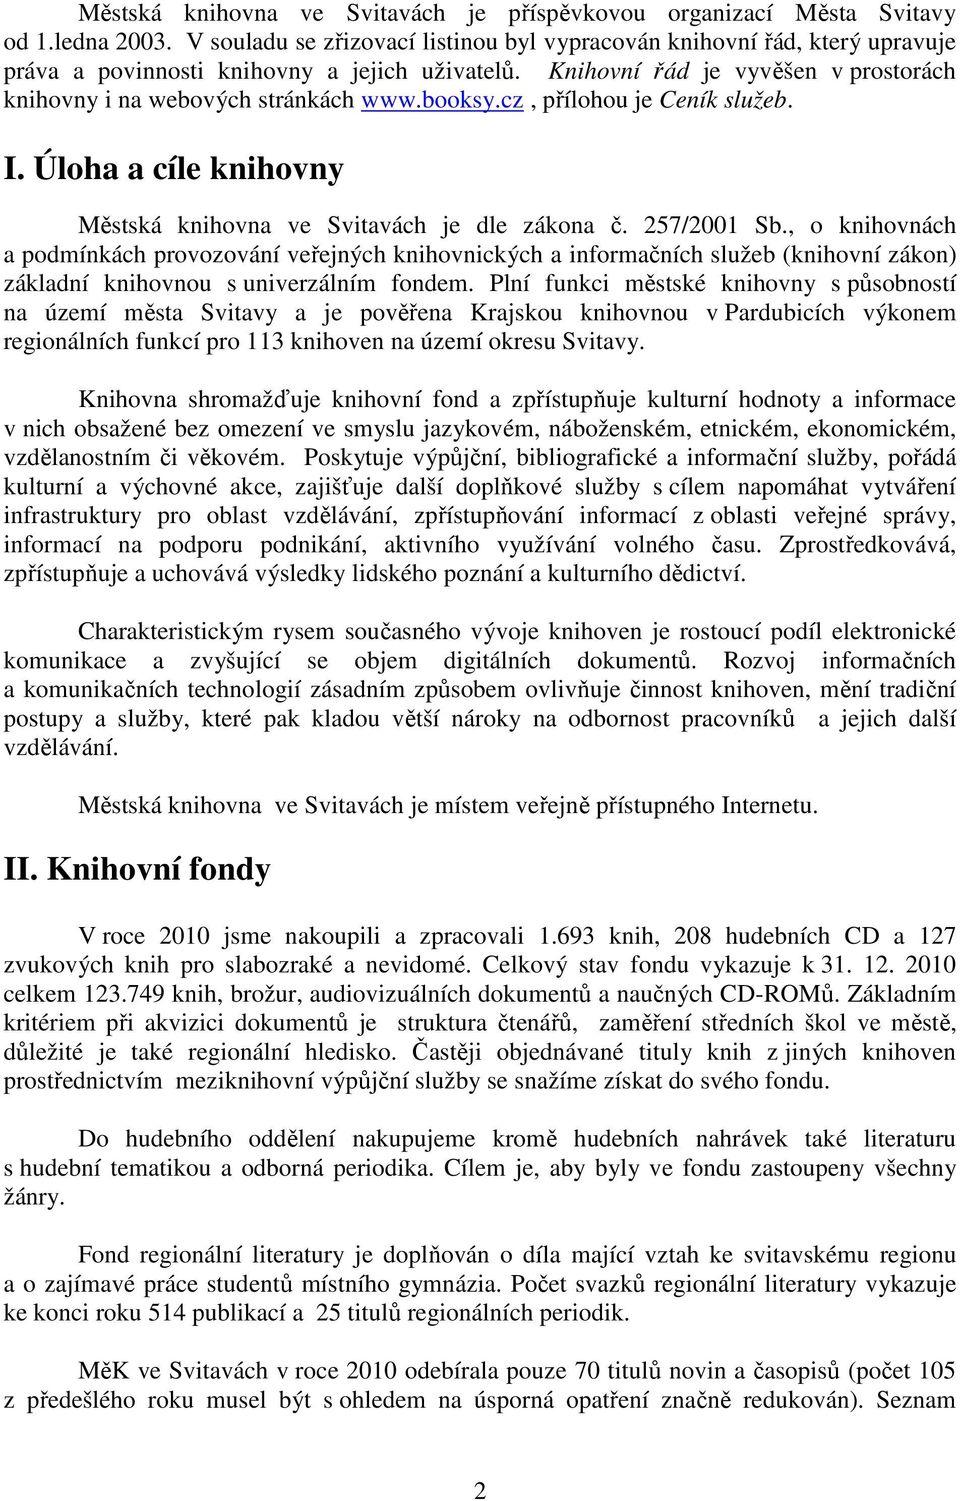 booksy.cz, přílohou je Ceník služeb. I. Úloha a cíle knihovny Městská knihovna ve Svitavách je dle zákona č. 257/2001 Sb.